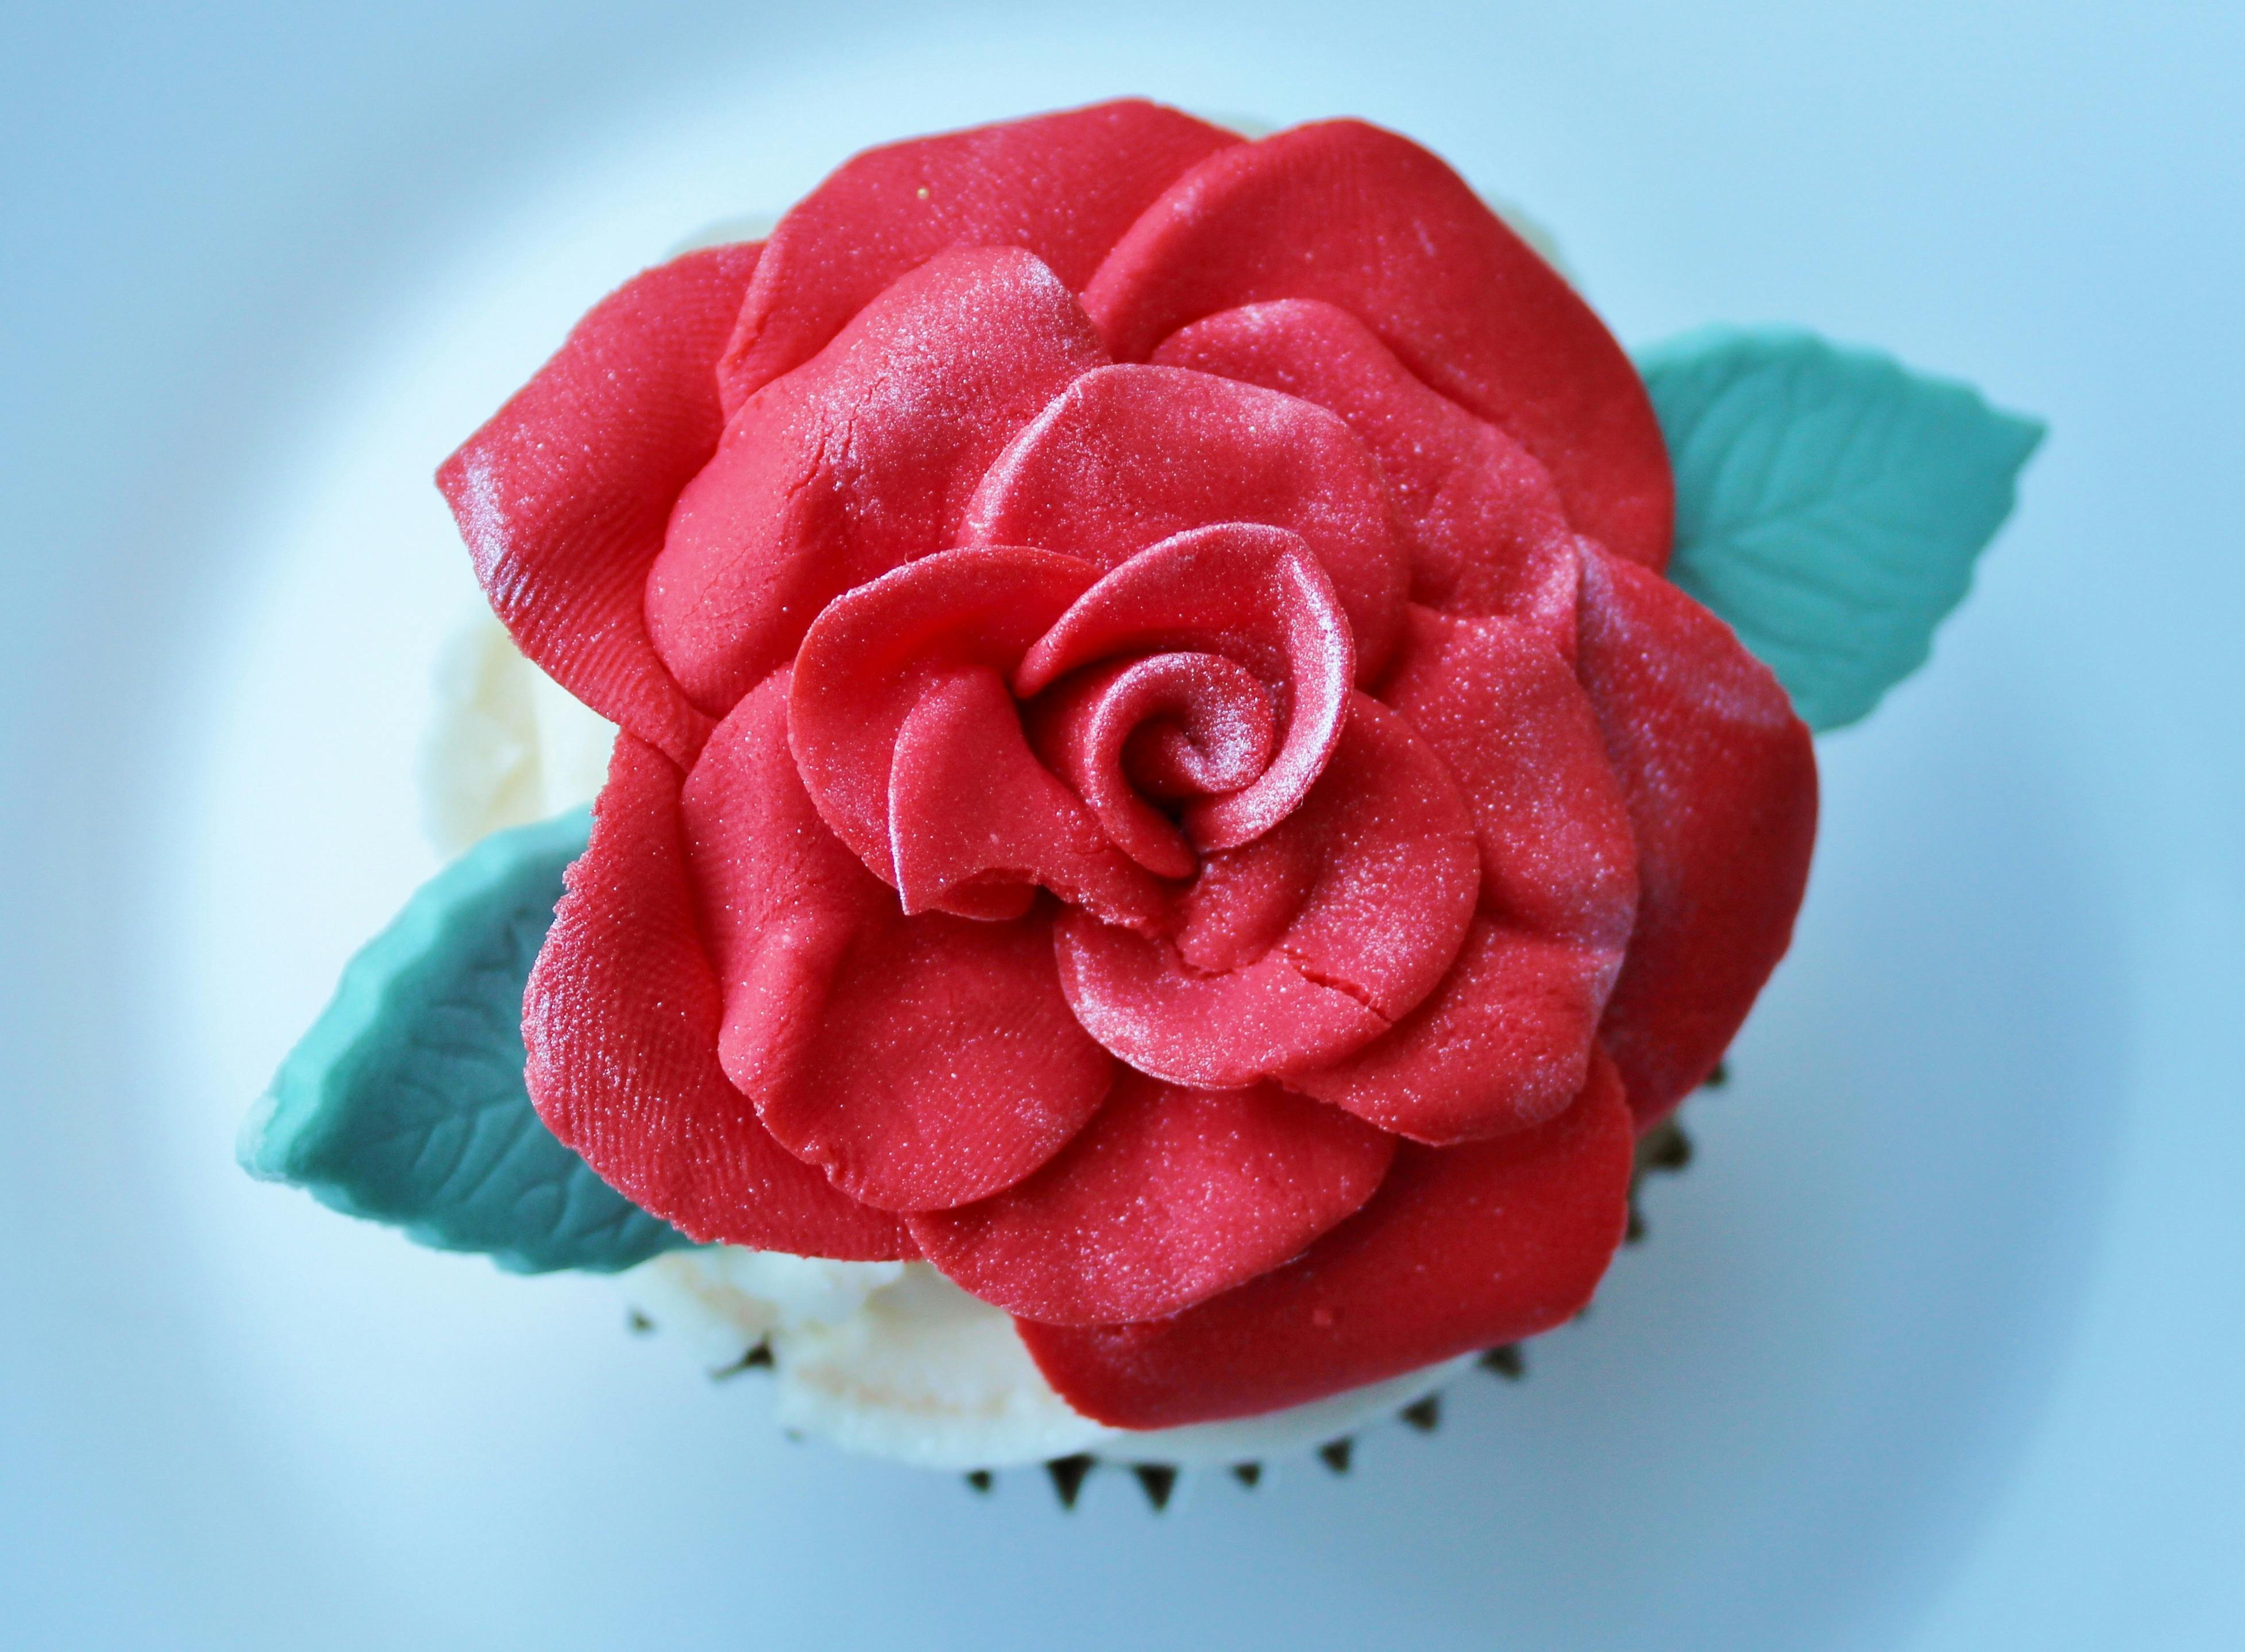 dessert-tart-wedding-cake-cupcake-47072.jpeg (3908×2876)